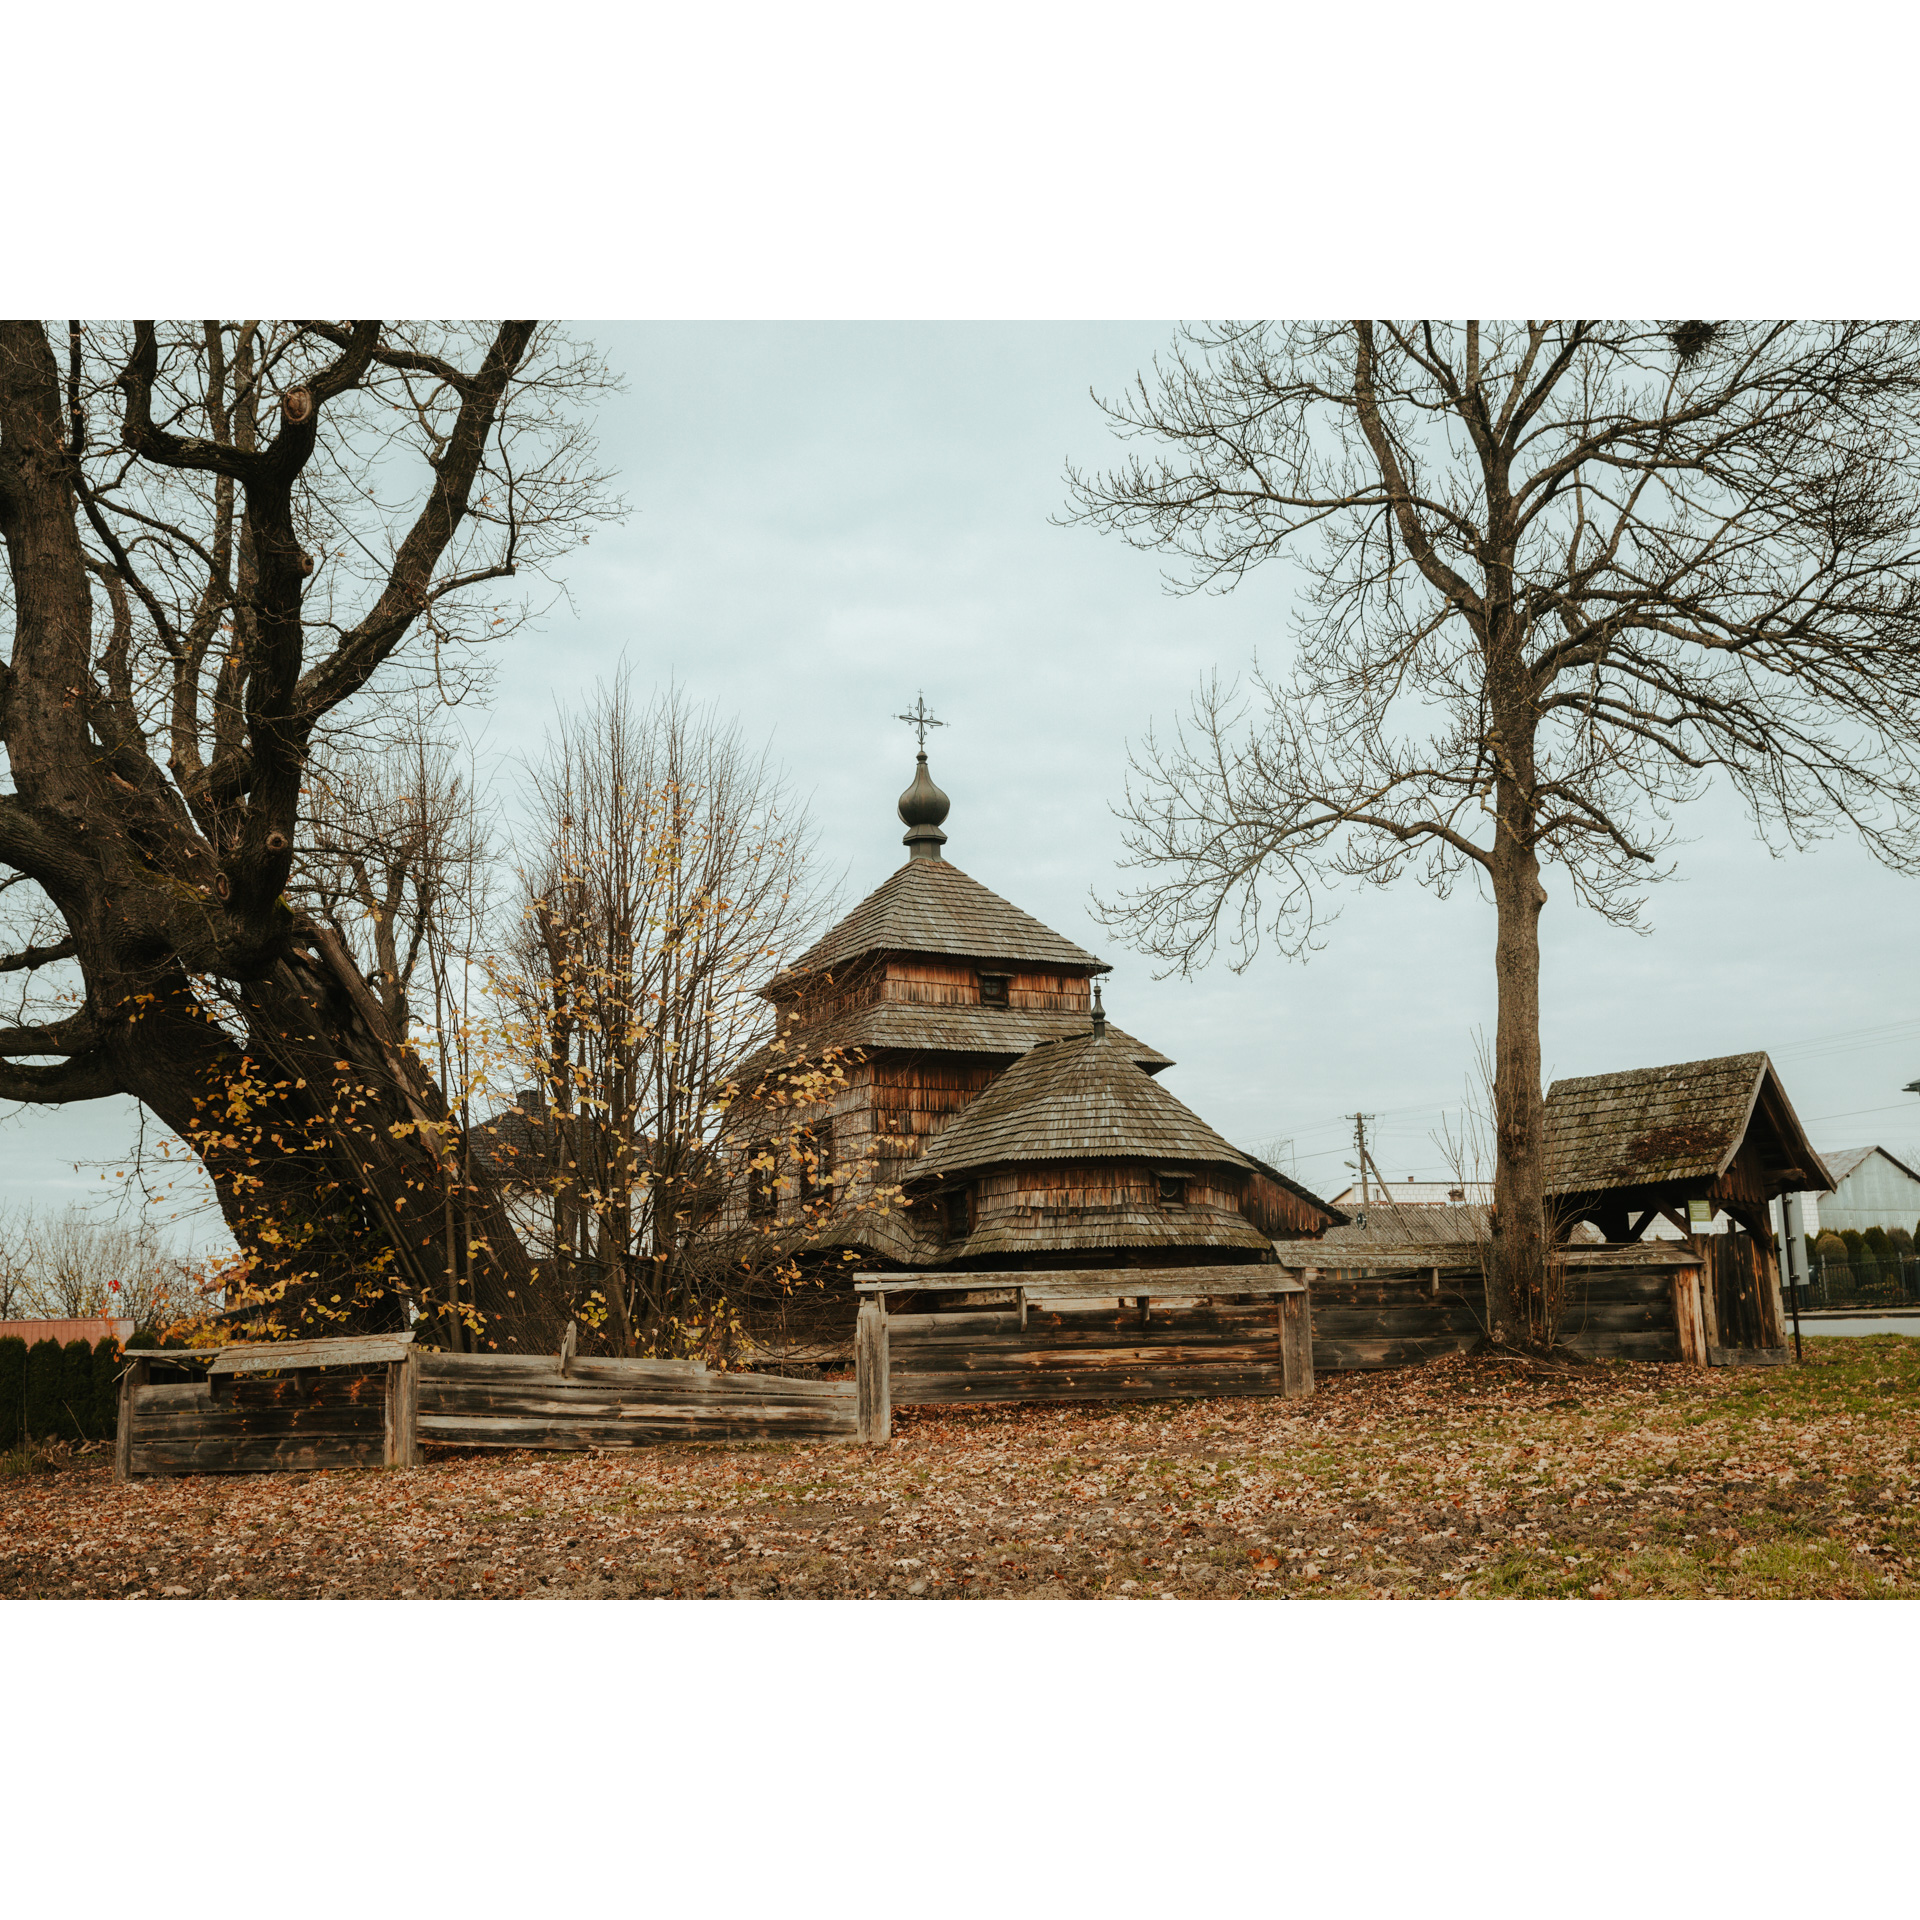 Drewniana cerkiew otoczona drewnianym płotem wśród drzew